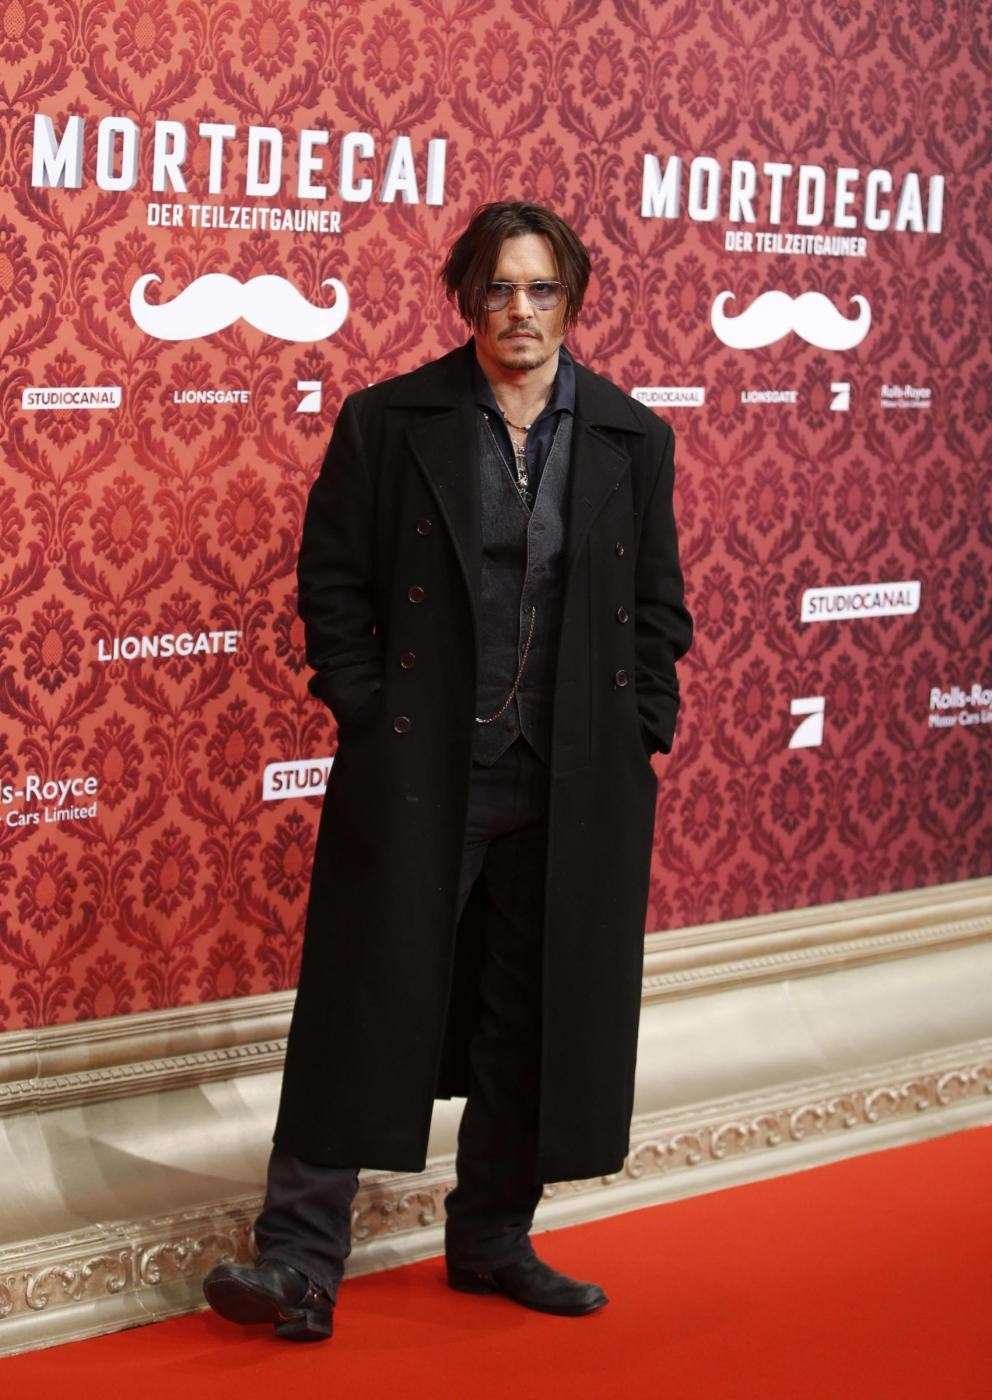 L'attore americano sul red carpet a Berlino